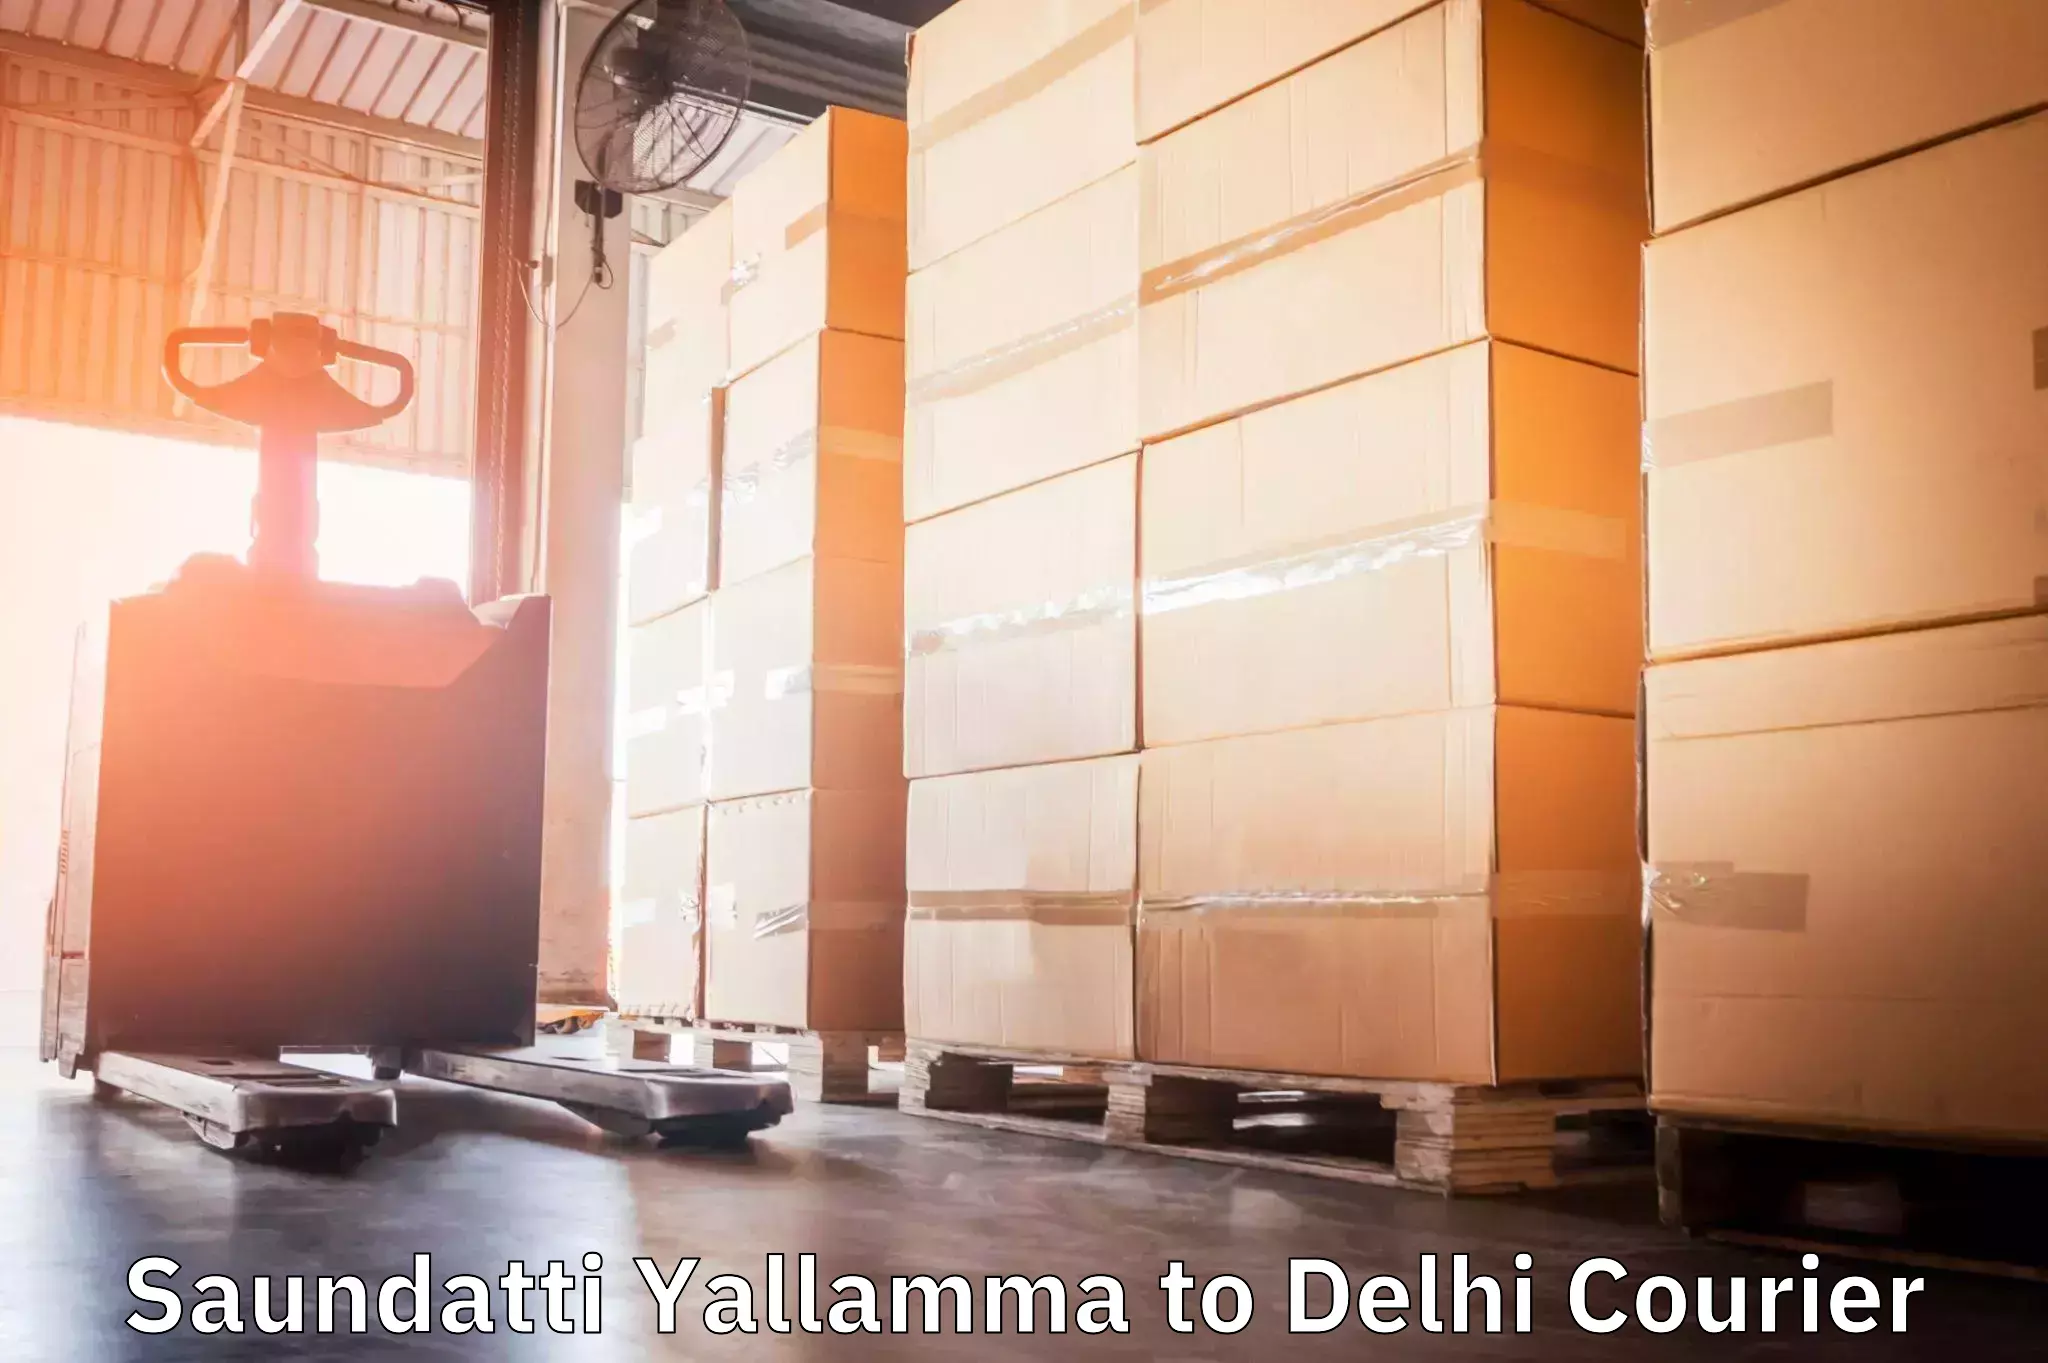 Customer-centric shipping Saundatti Yallamma to Jawaharlal Nehru University New Delhi